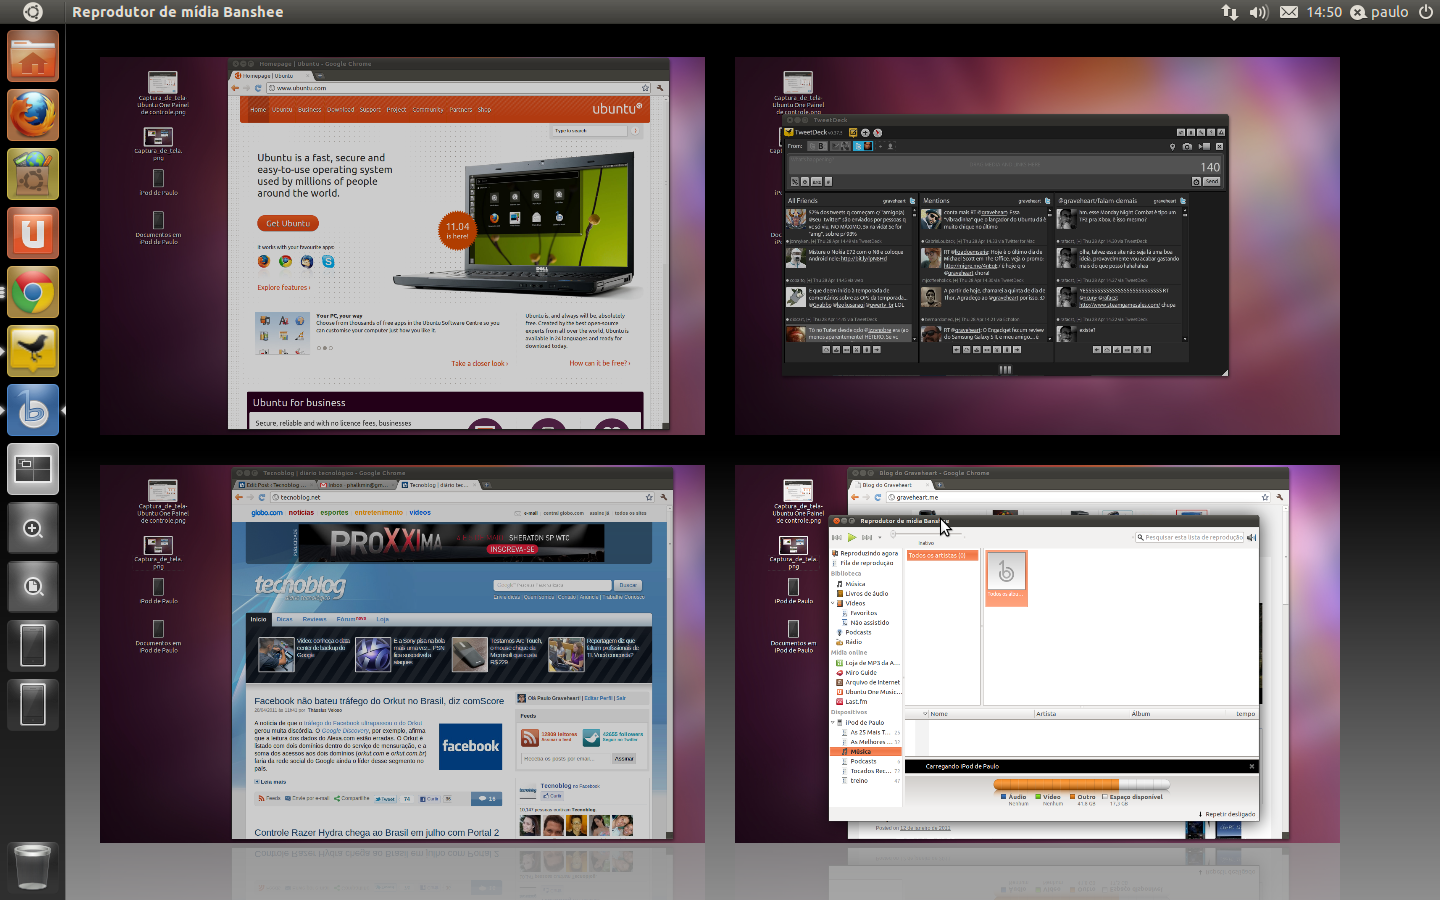 Atalhos de teclado e outros truques no Ubuntu 11.04